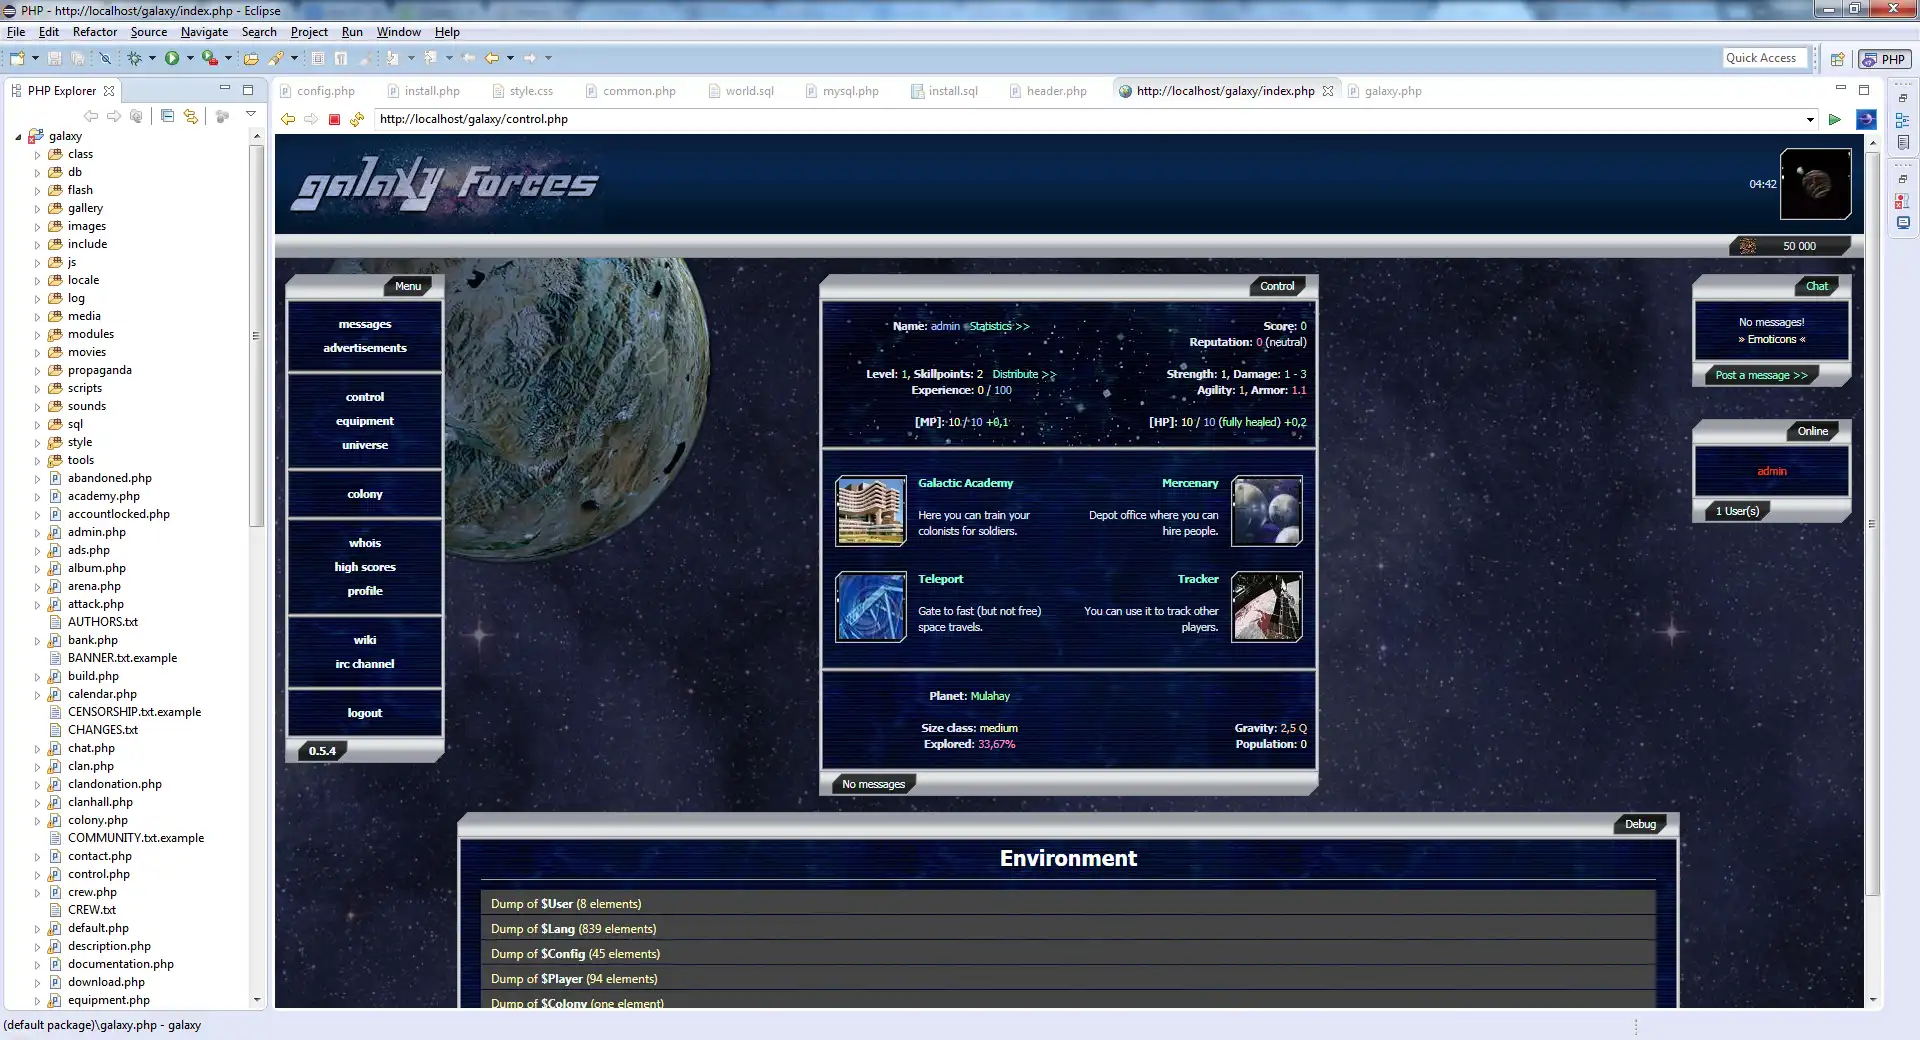 הורד את כלי האינטרנט או אפליקציית האינטרנט Galaxy Forces MMORPG לפעול בלינוקס באופן מקוון